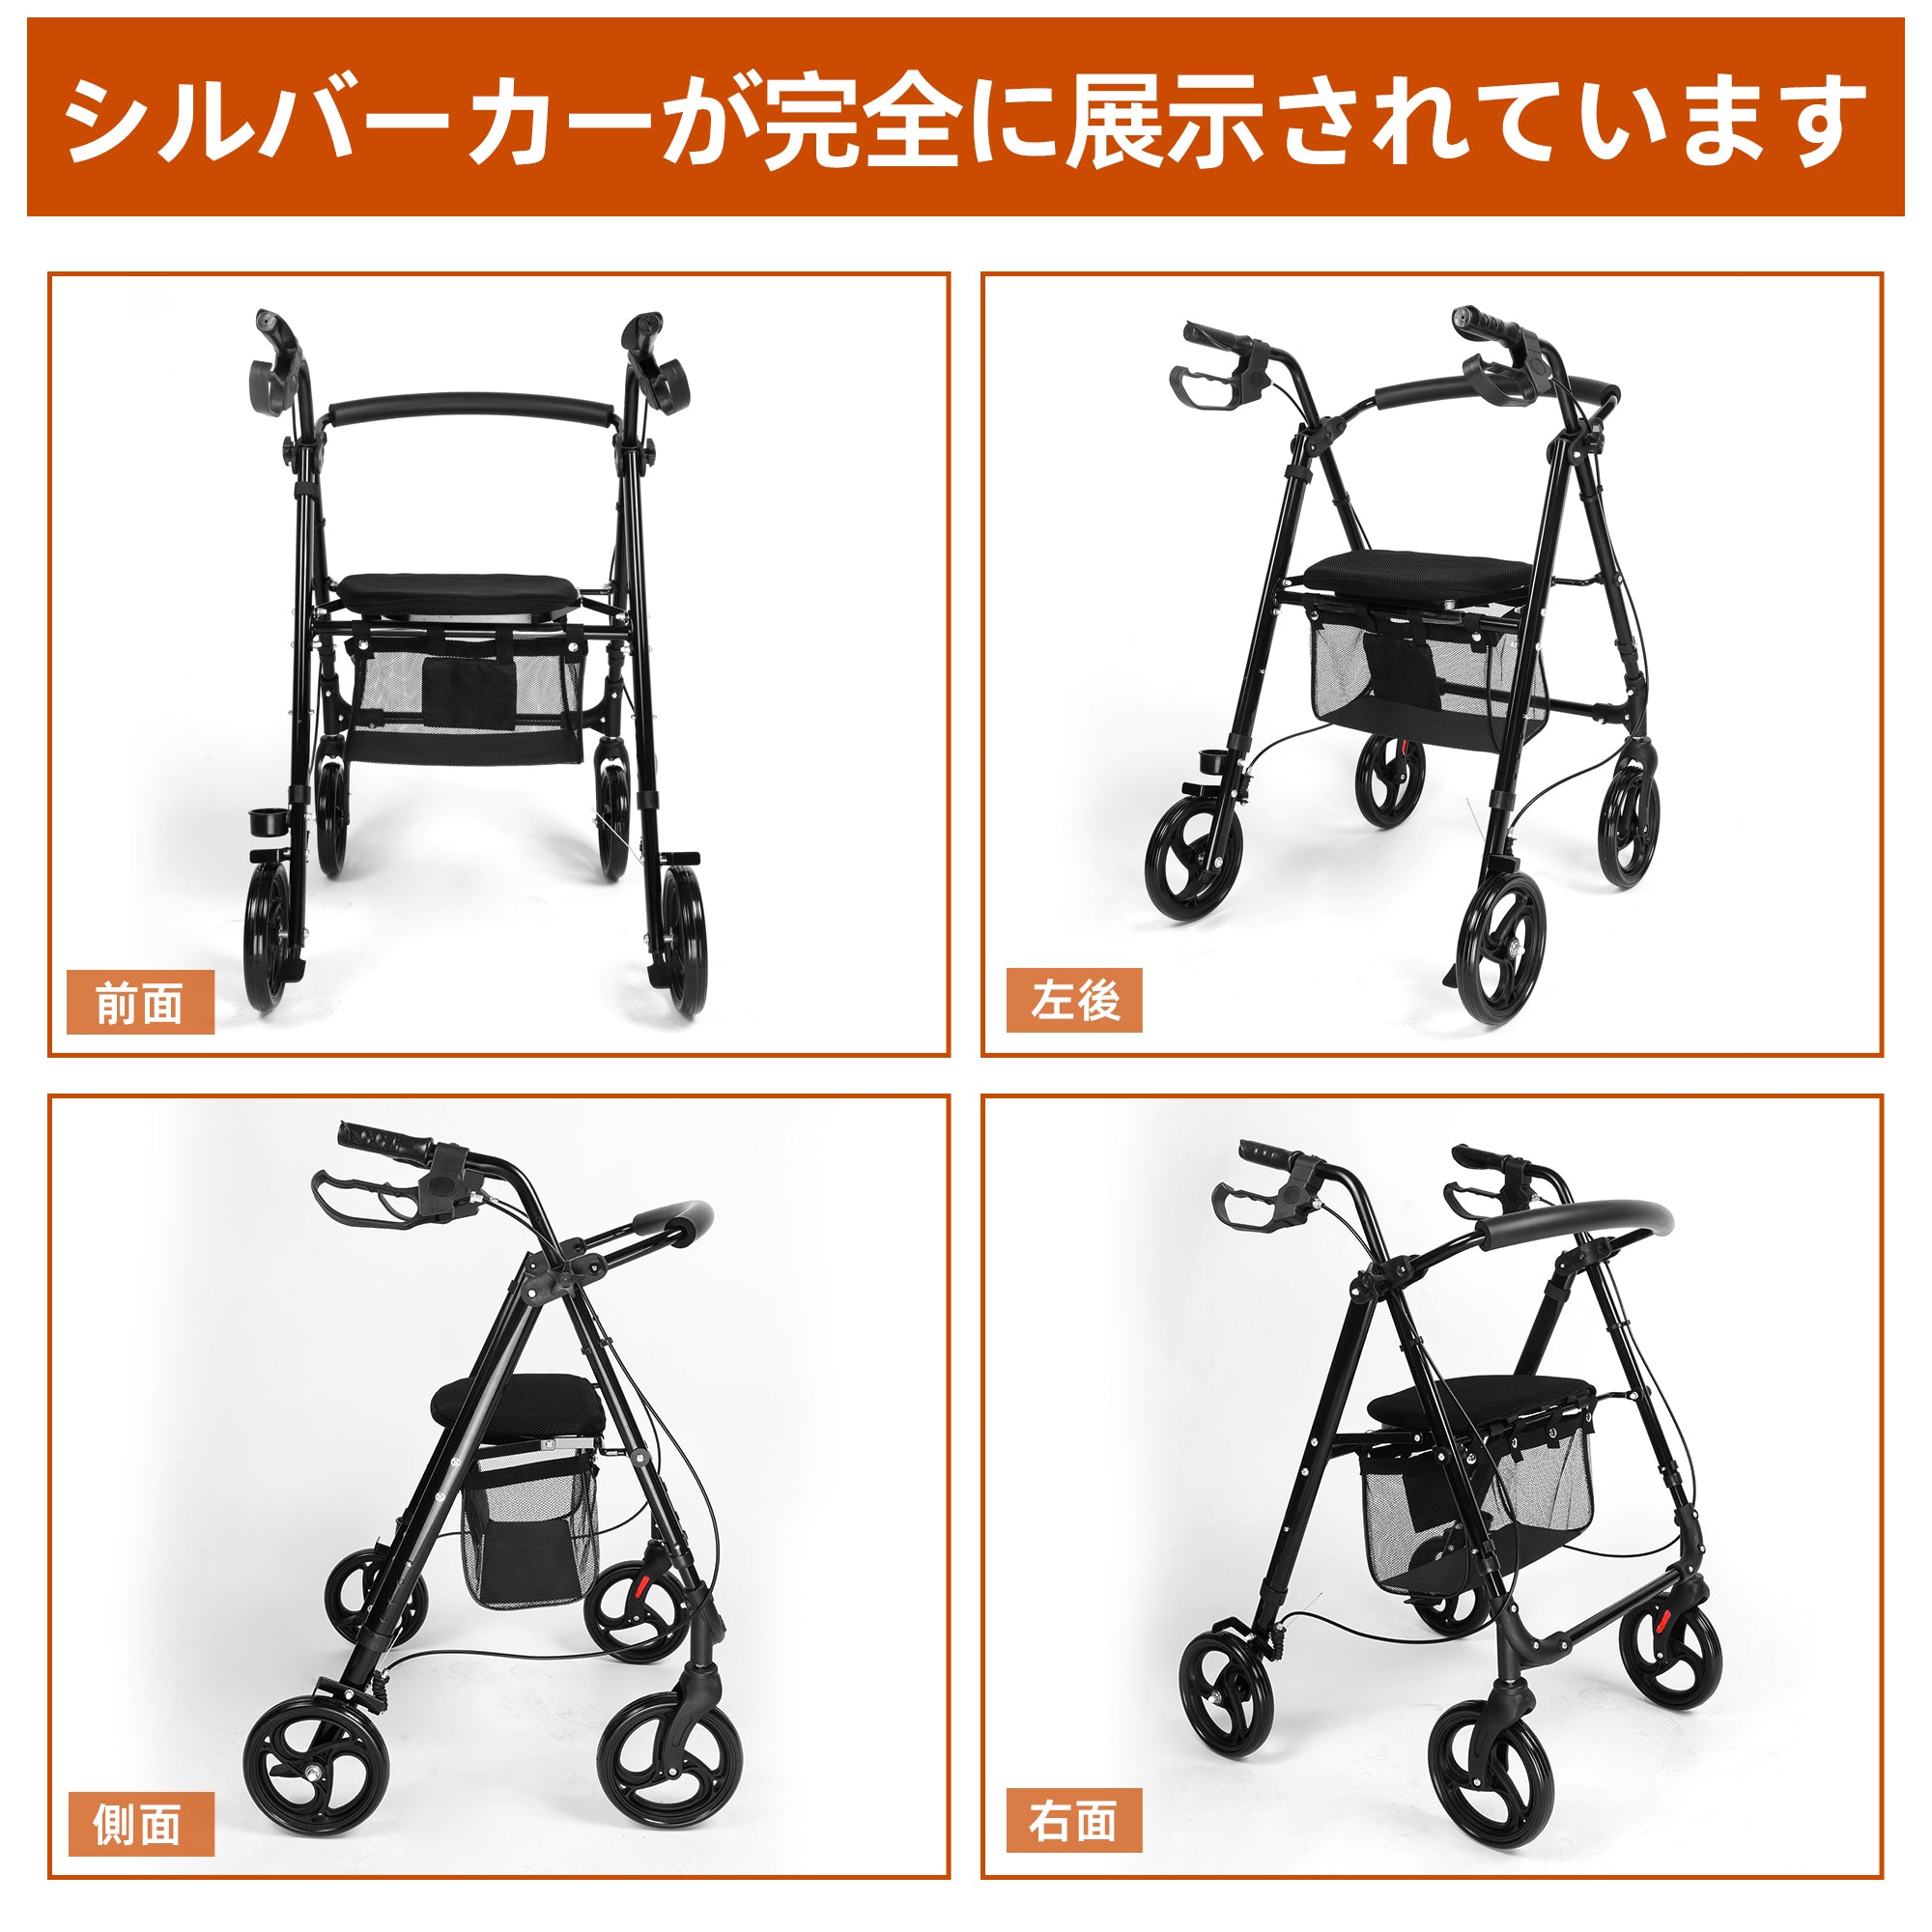 【新品未開封】Care-Parents 多機能歩行器 四輪 CP-04203360度回転